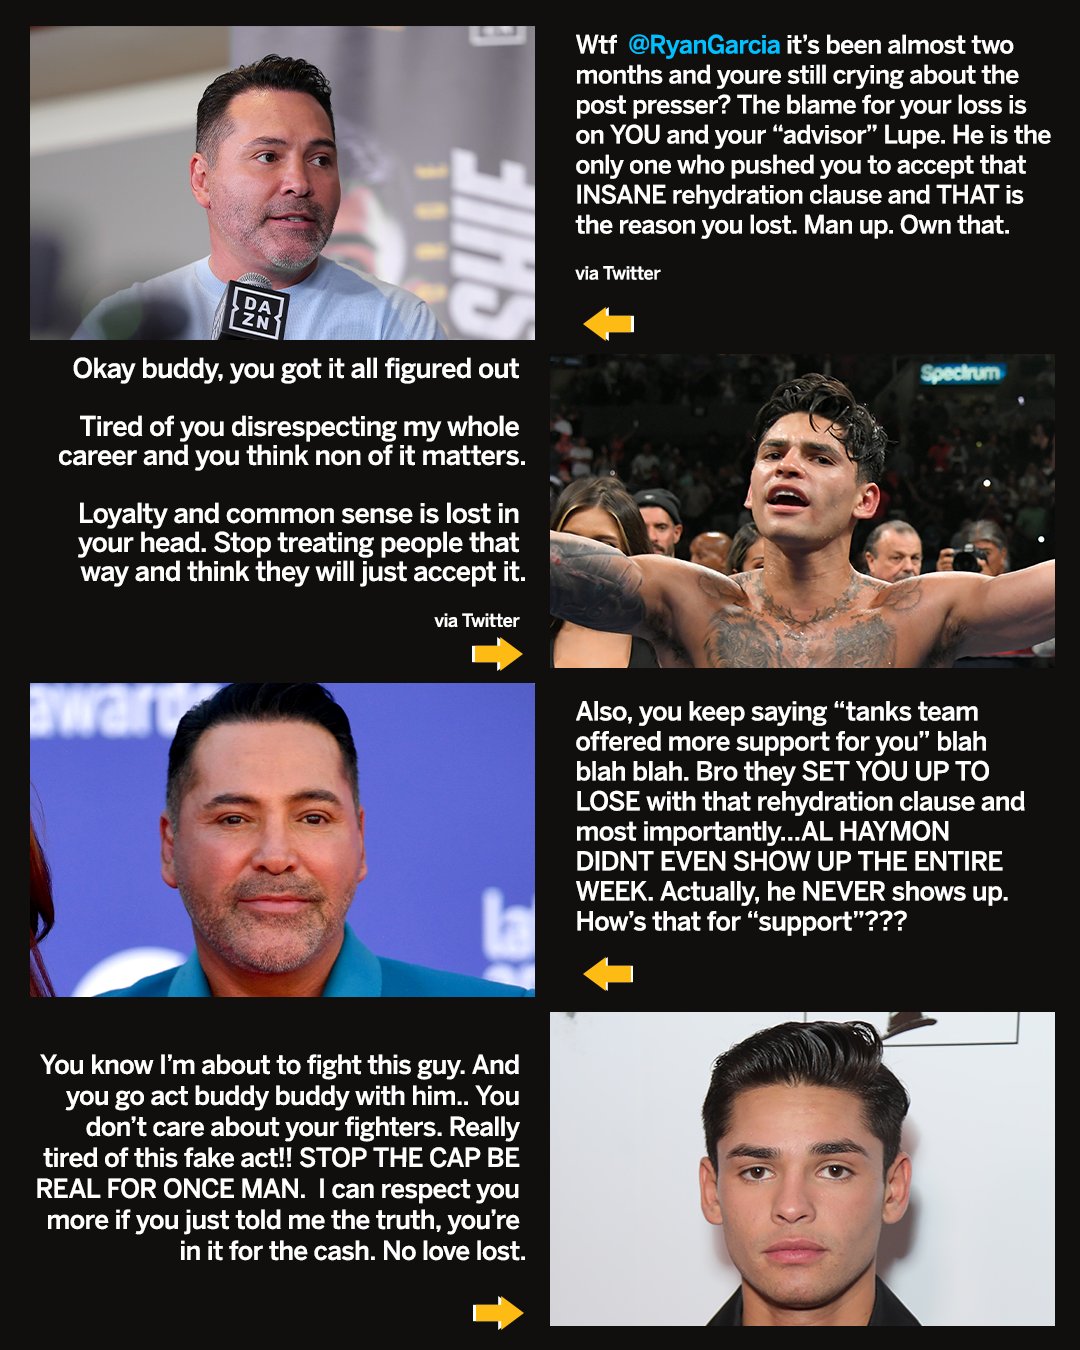 Image: Ryan Garcia & Oscar De La Hoya trade insults on Twitter